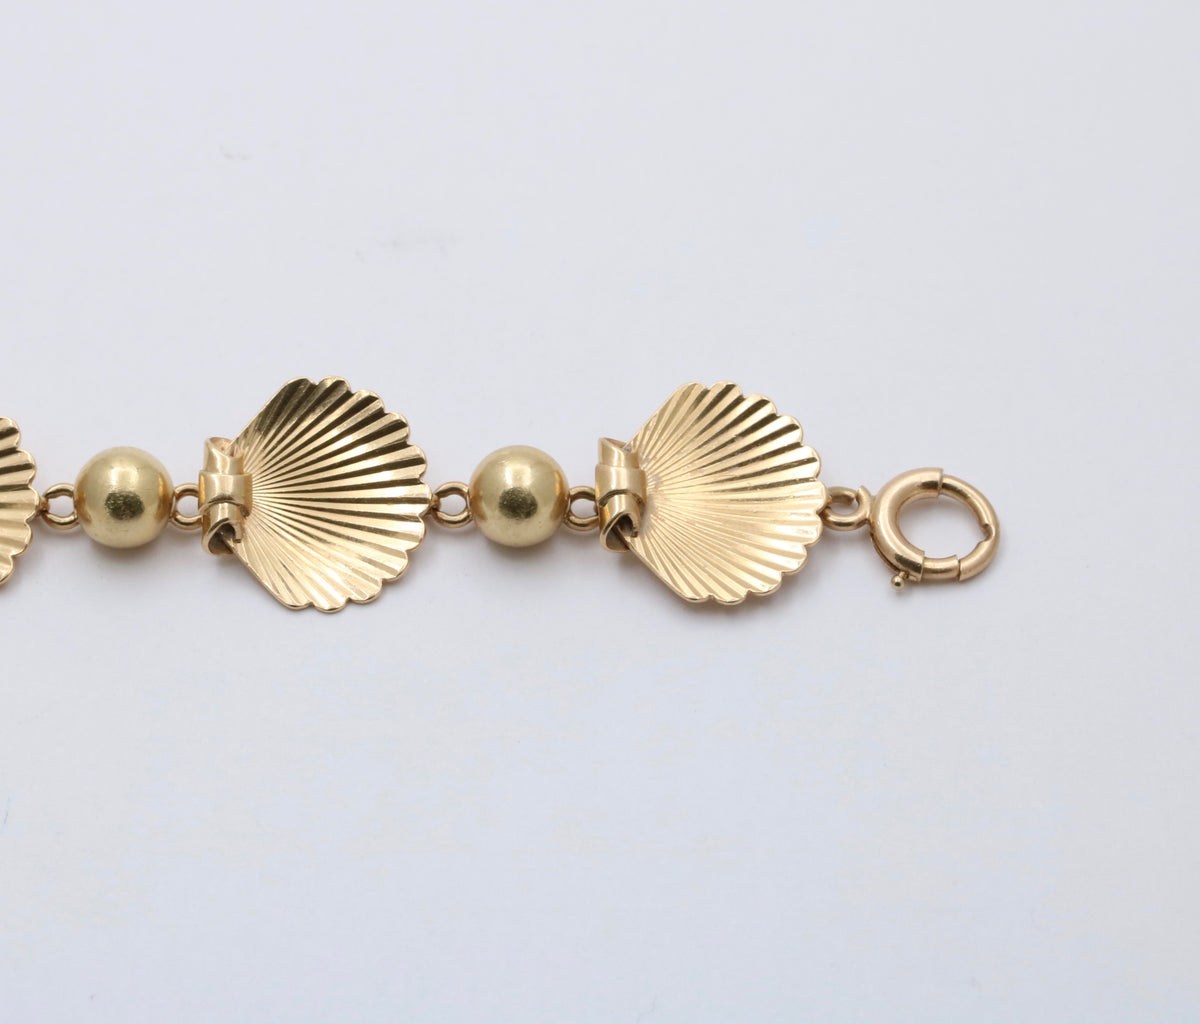 Vintage Larter & Sons 14K Gold Shell Bracelet, 22.2 Grams